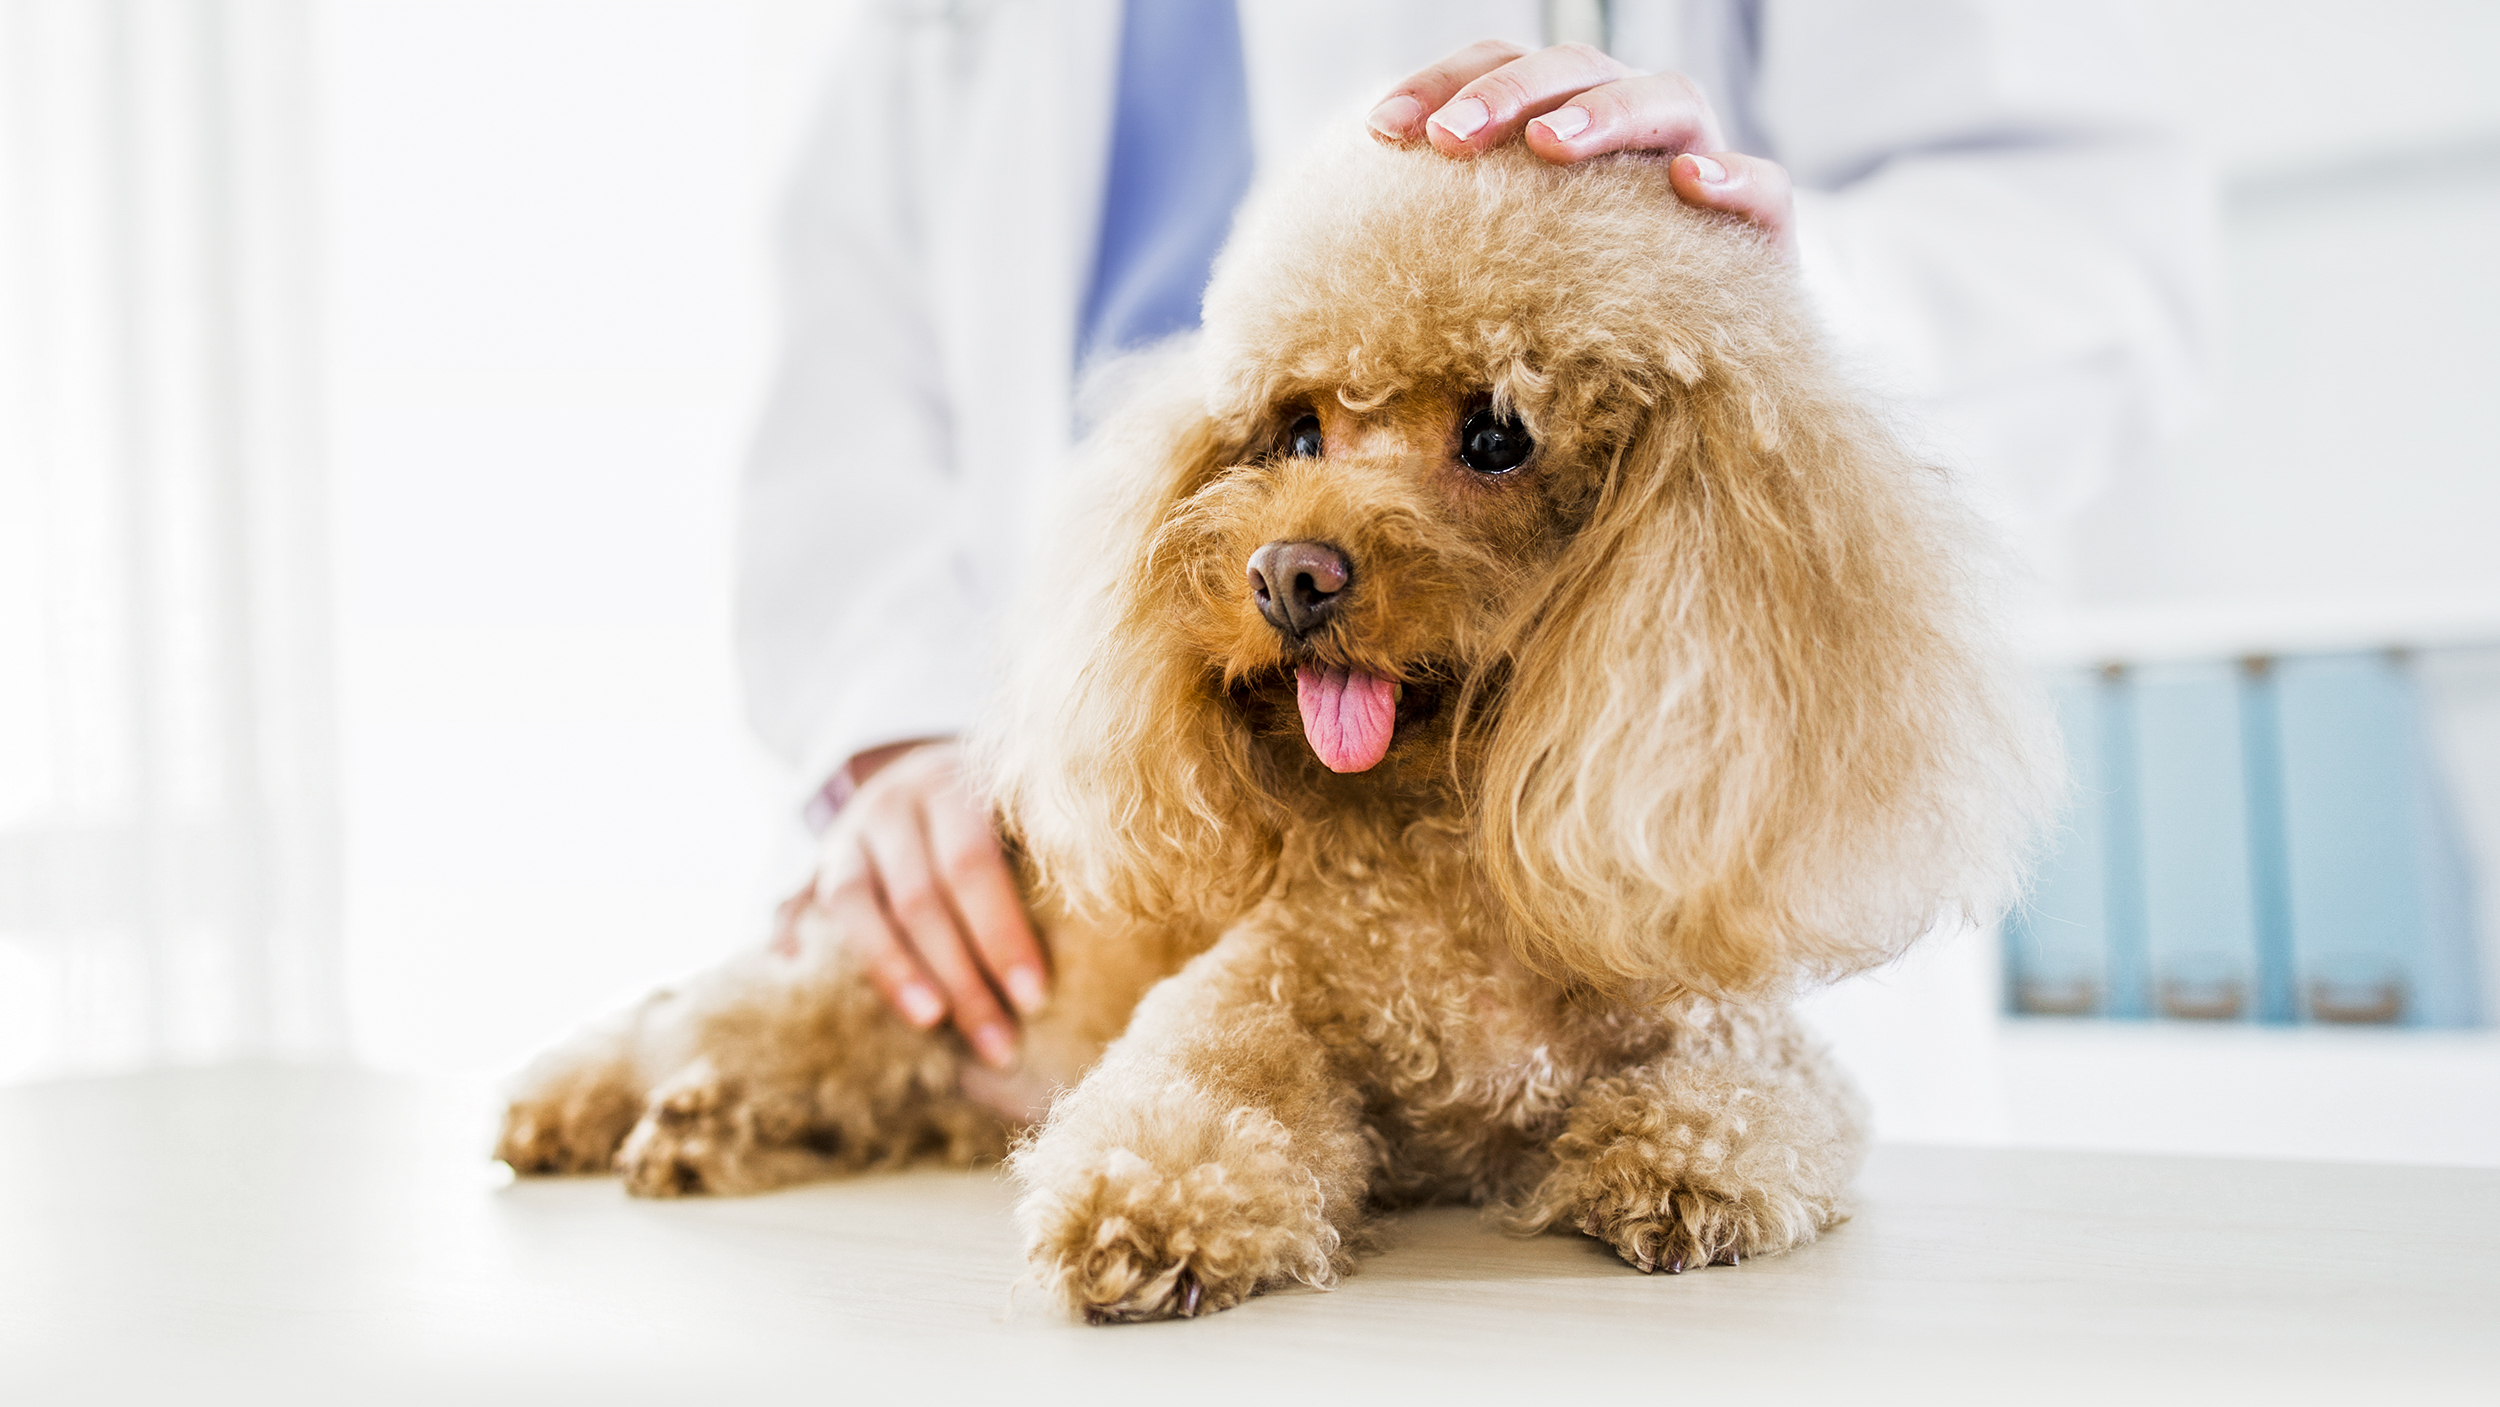 Poodle adulto deitado numa marquesa de uma clínica veterinária.